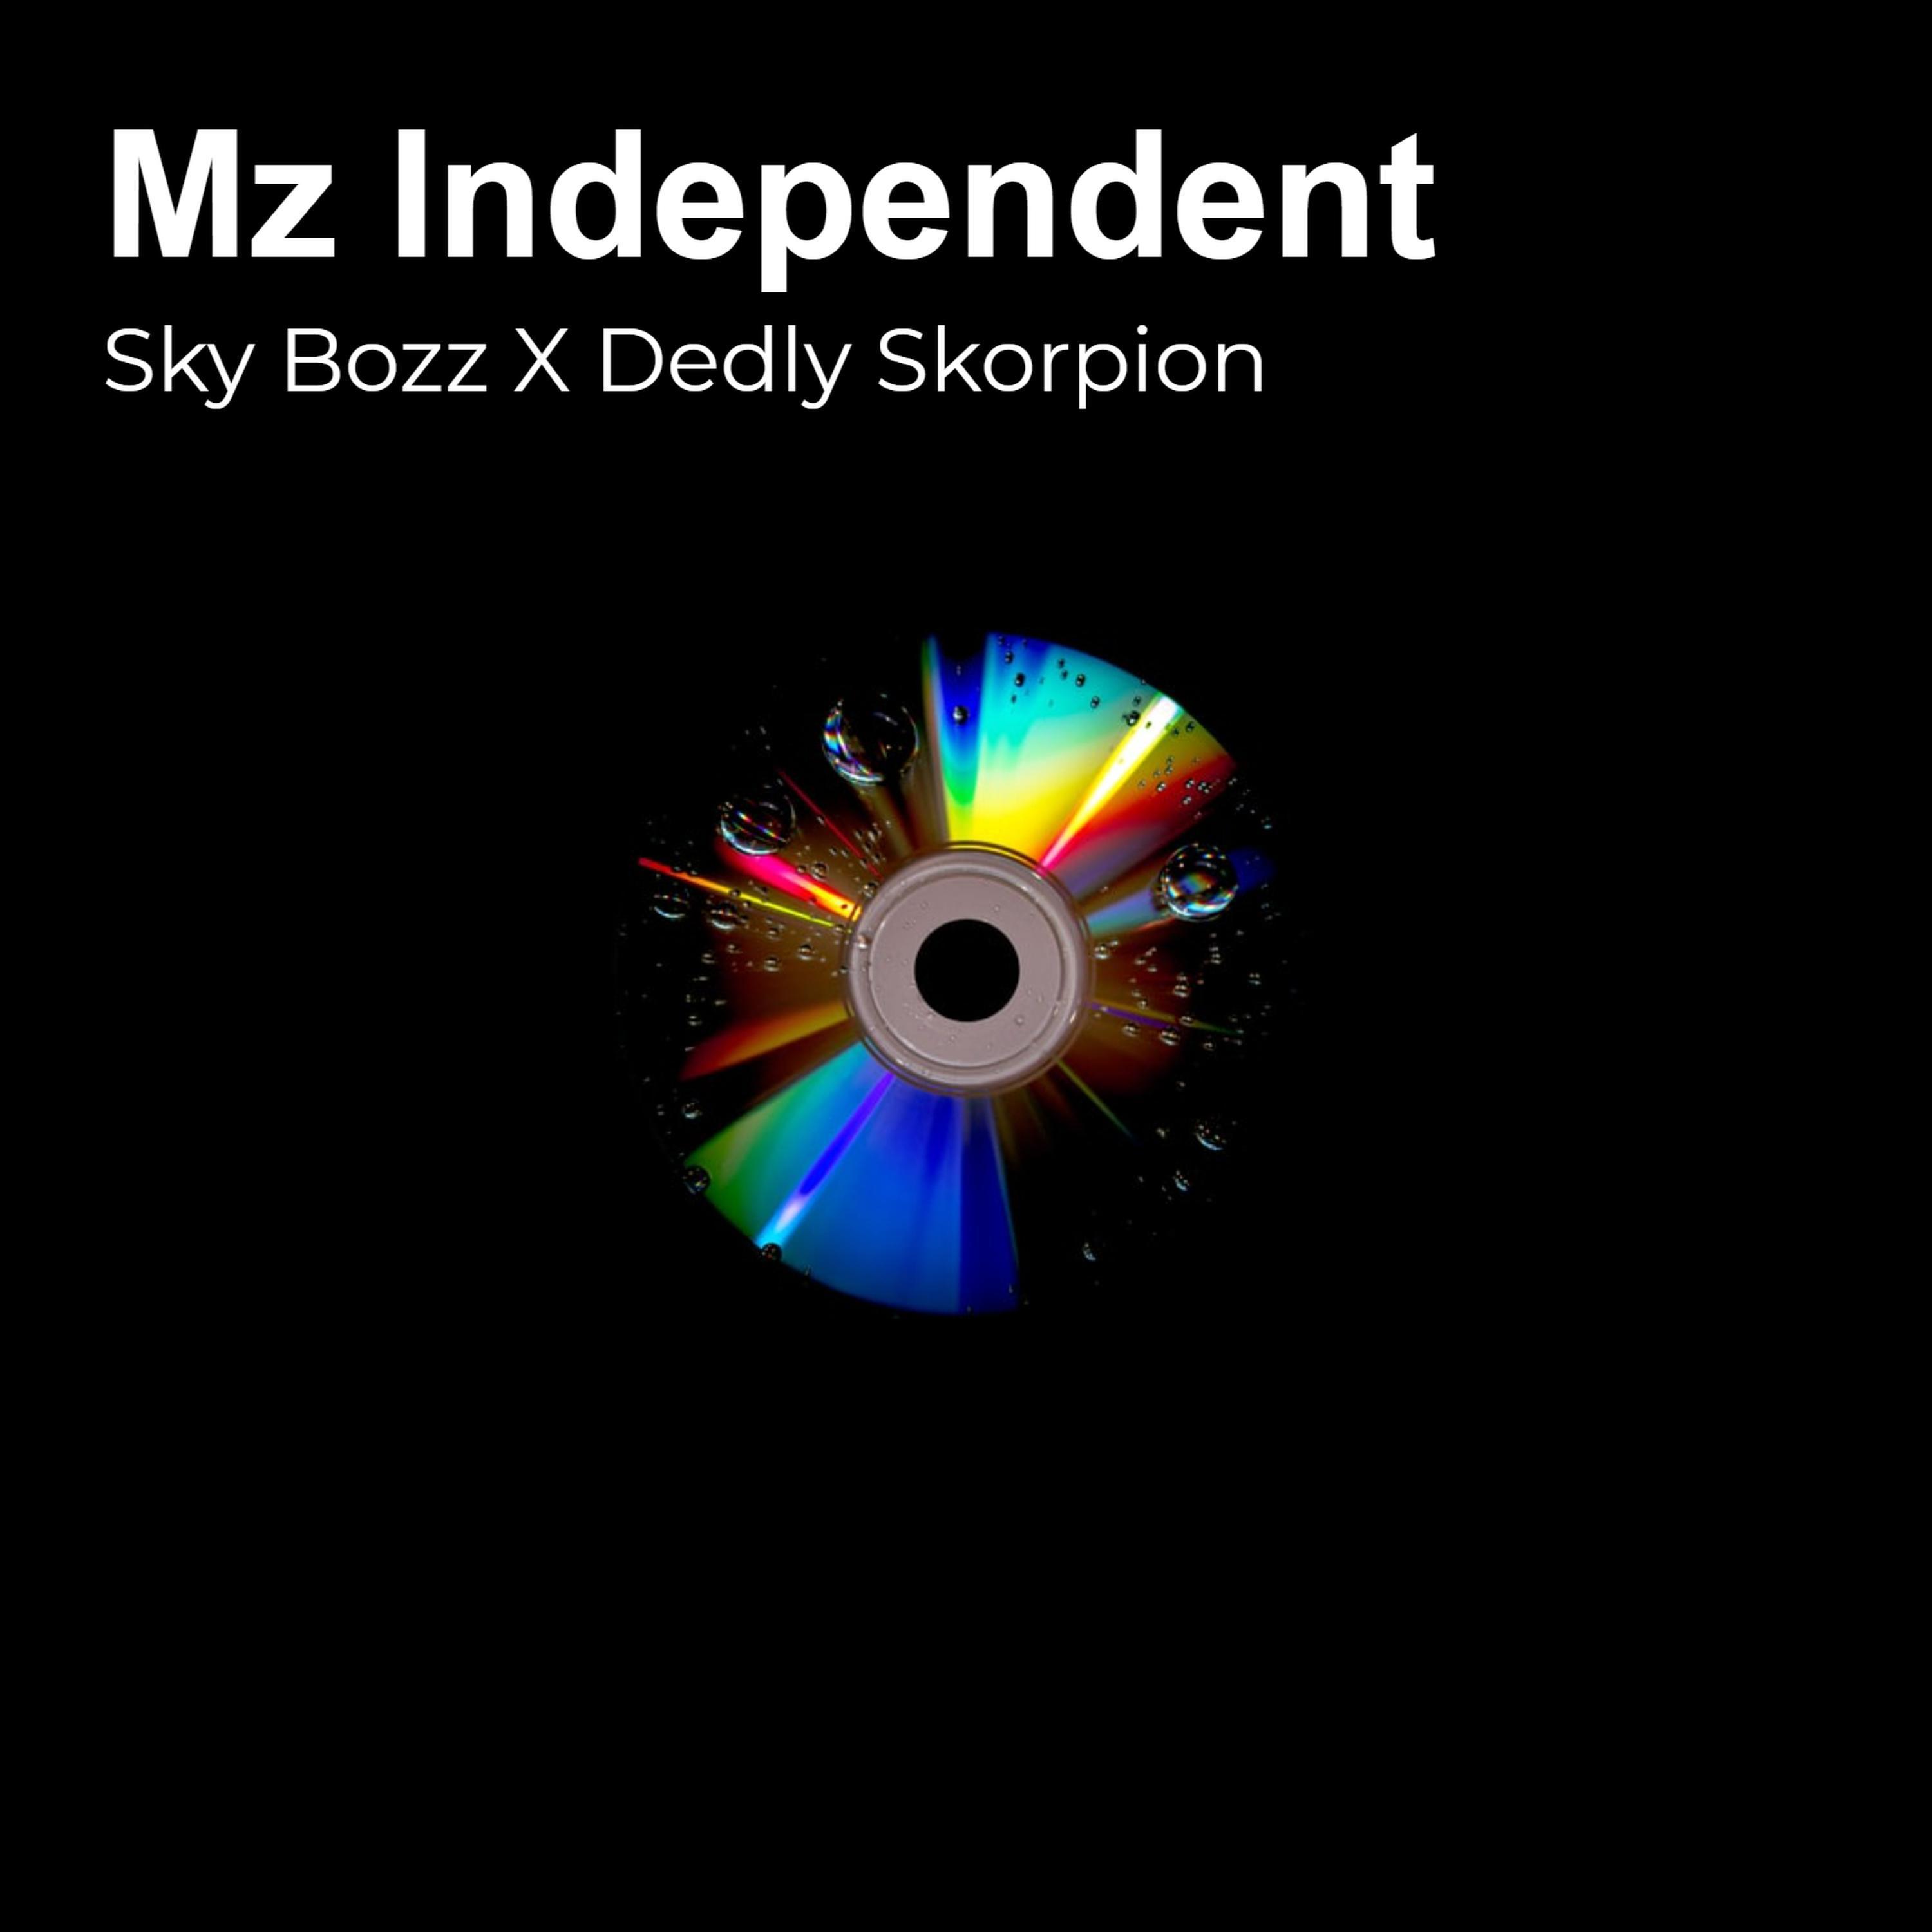 Sky Bozz - Mz Independent